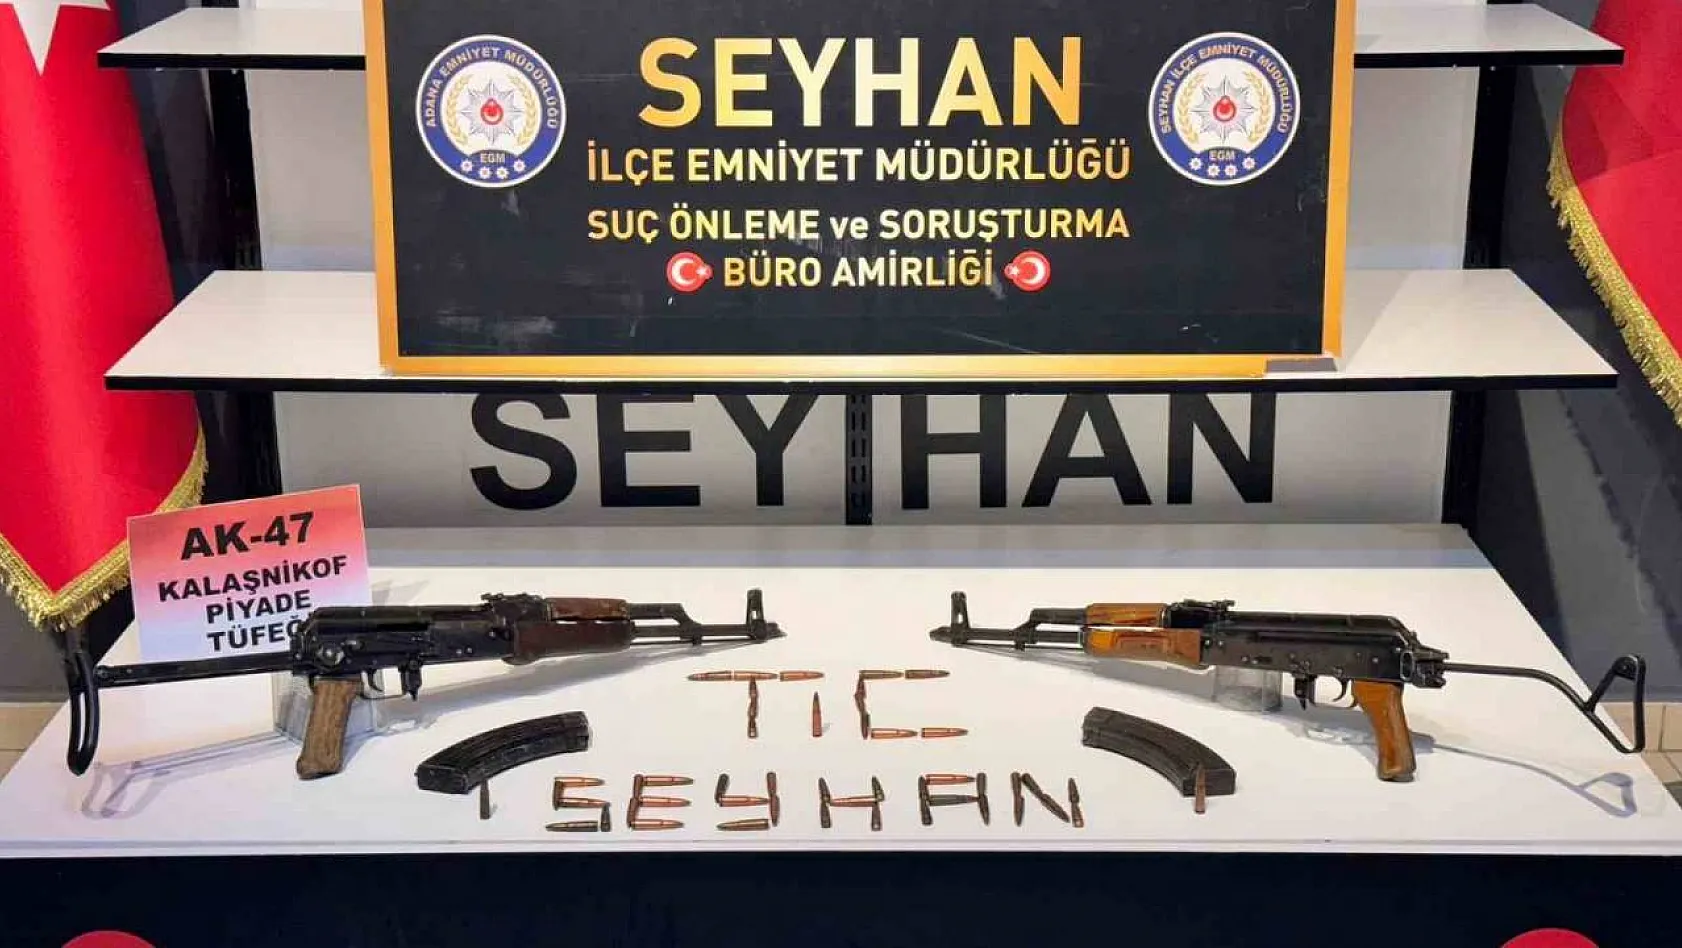 Adana'da bir eve yapılan baskında iki uzun namlulu silah ele geçirildi